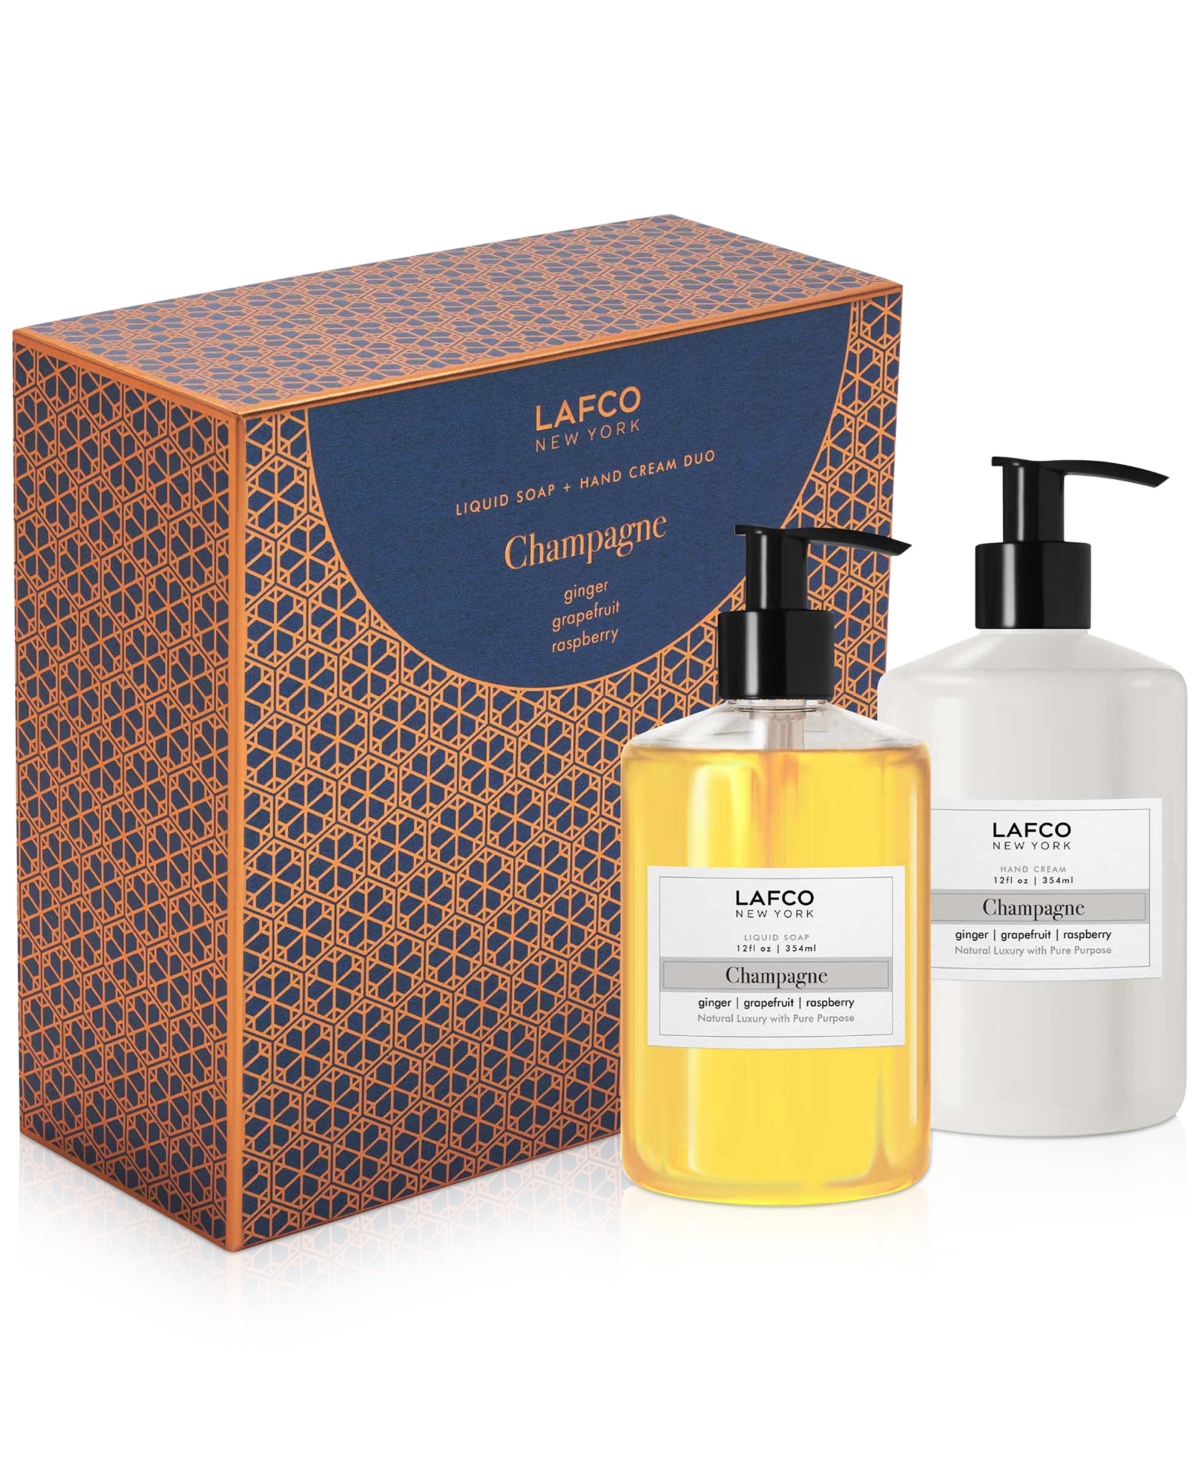 Lafco New York 2-pc. Champagne Liquid Soap & Hand Cream Gift Set